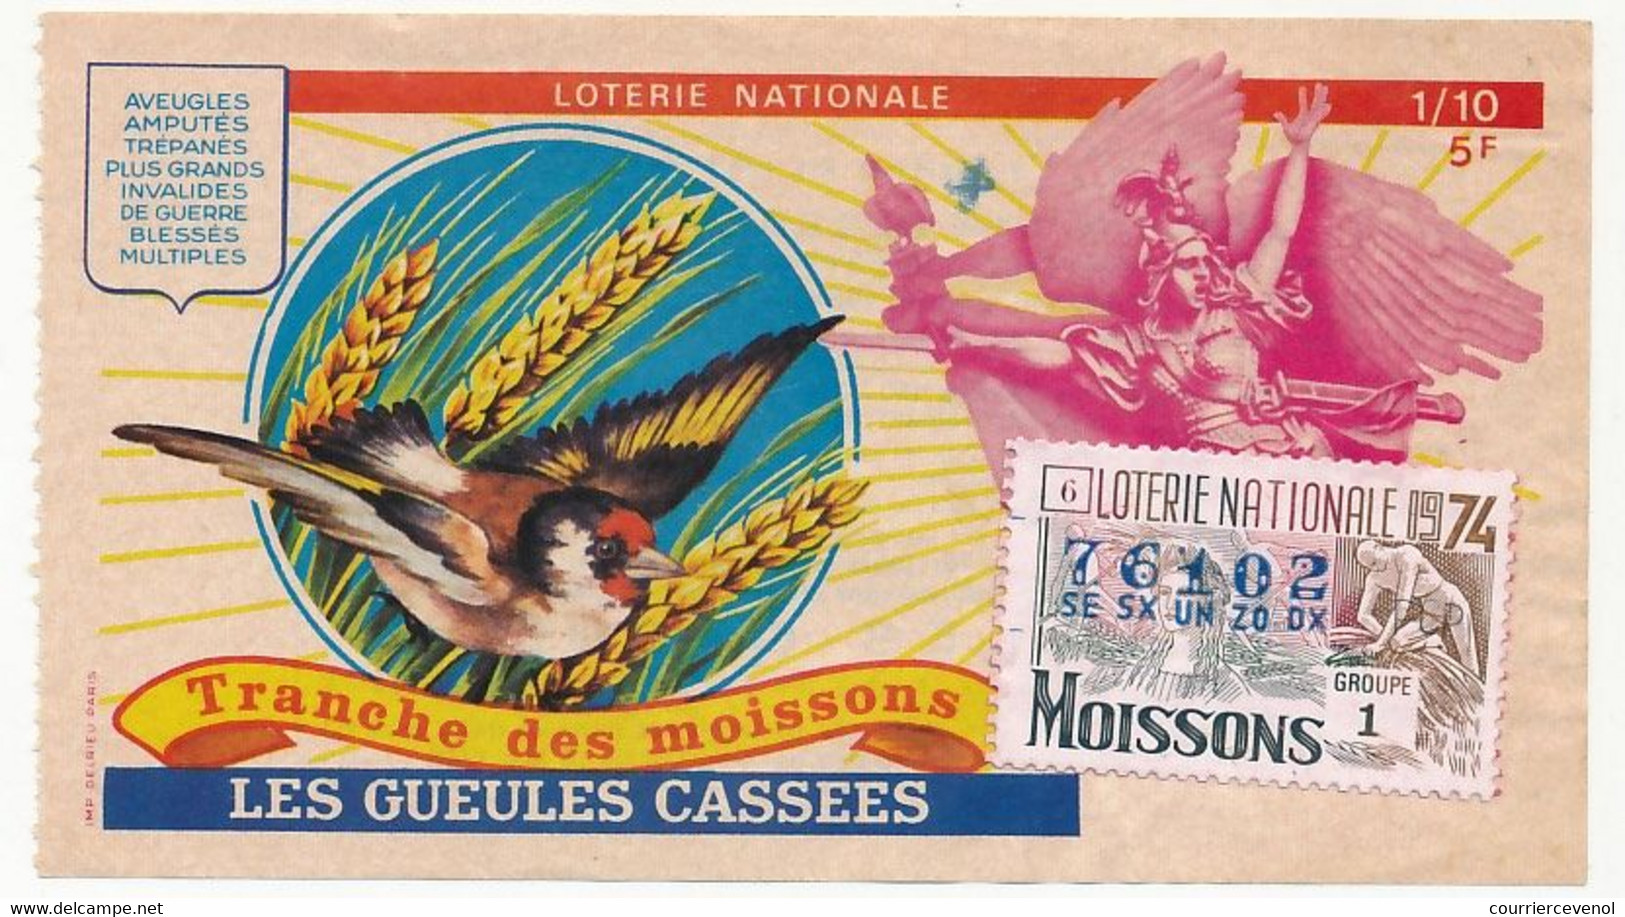 FRANCE - Loterie Nationale - 1/10ème - Les Gueules Cassées  - Tranche Des Moissons - 1974 - Loterijbiljetten